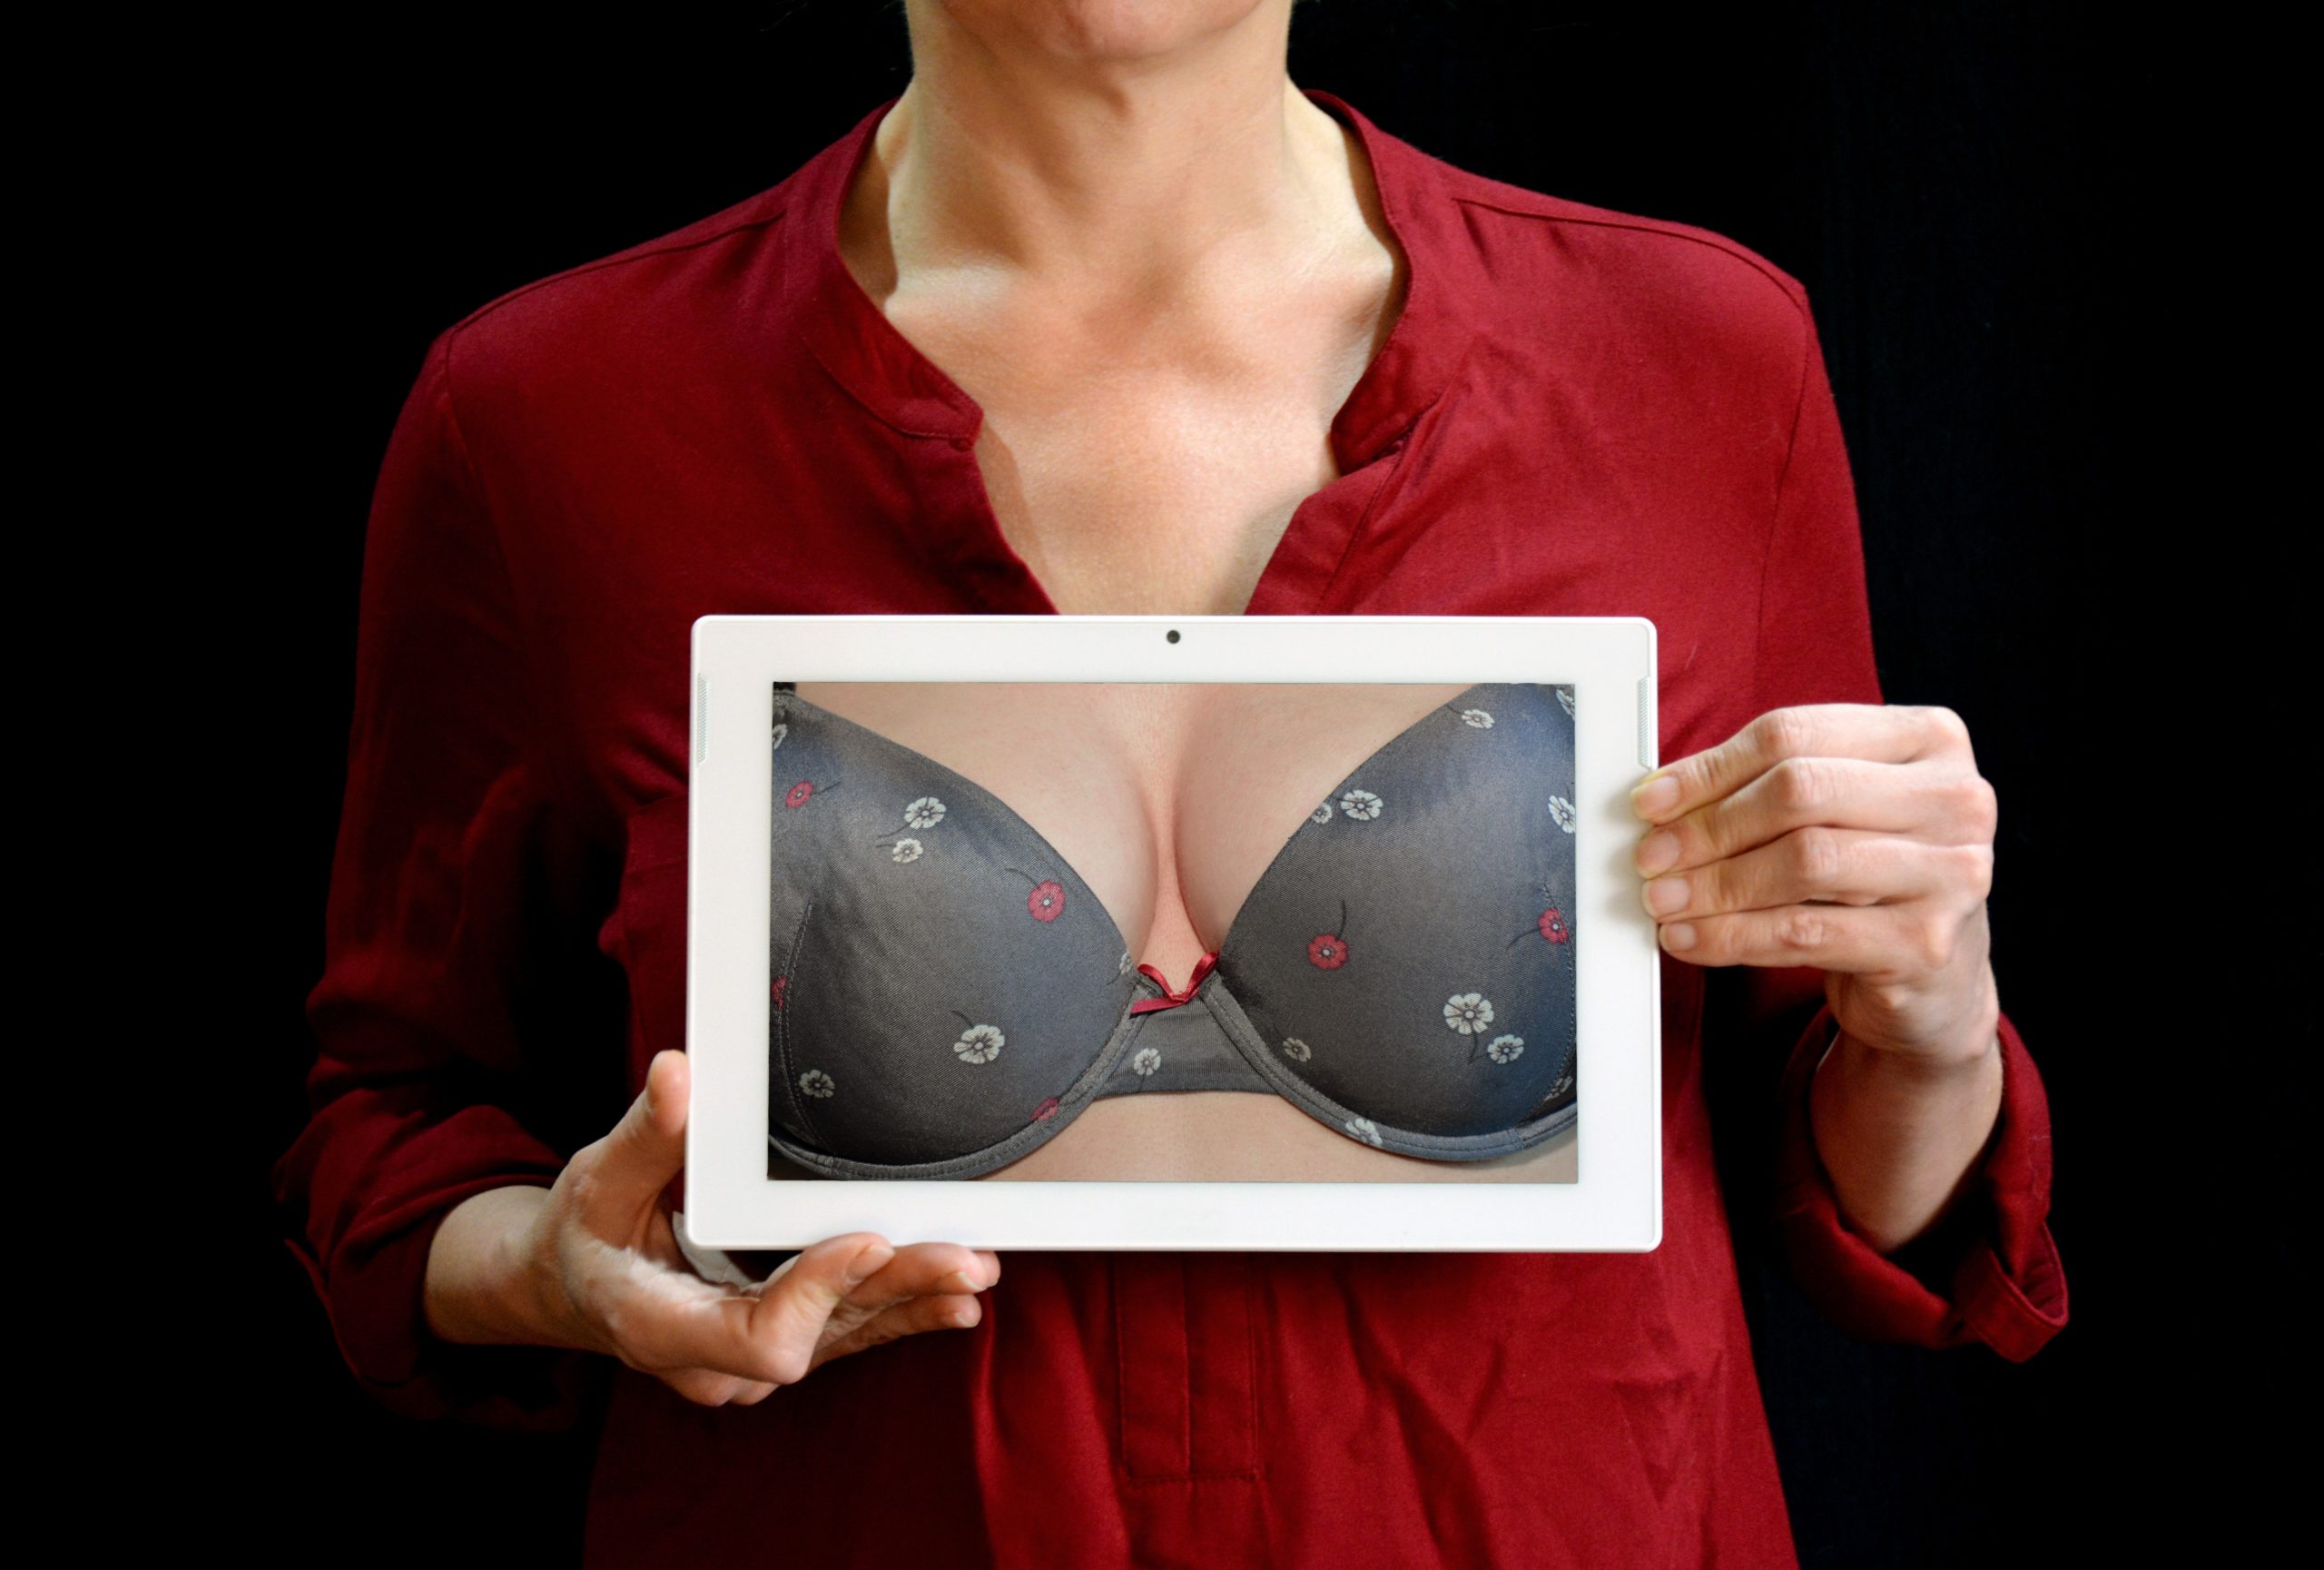 Breast Reconstruction Procedures